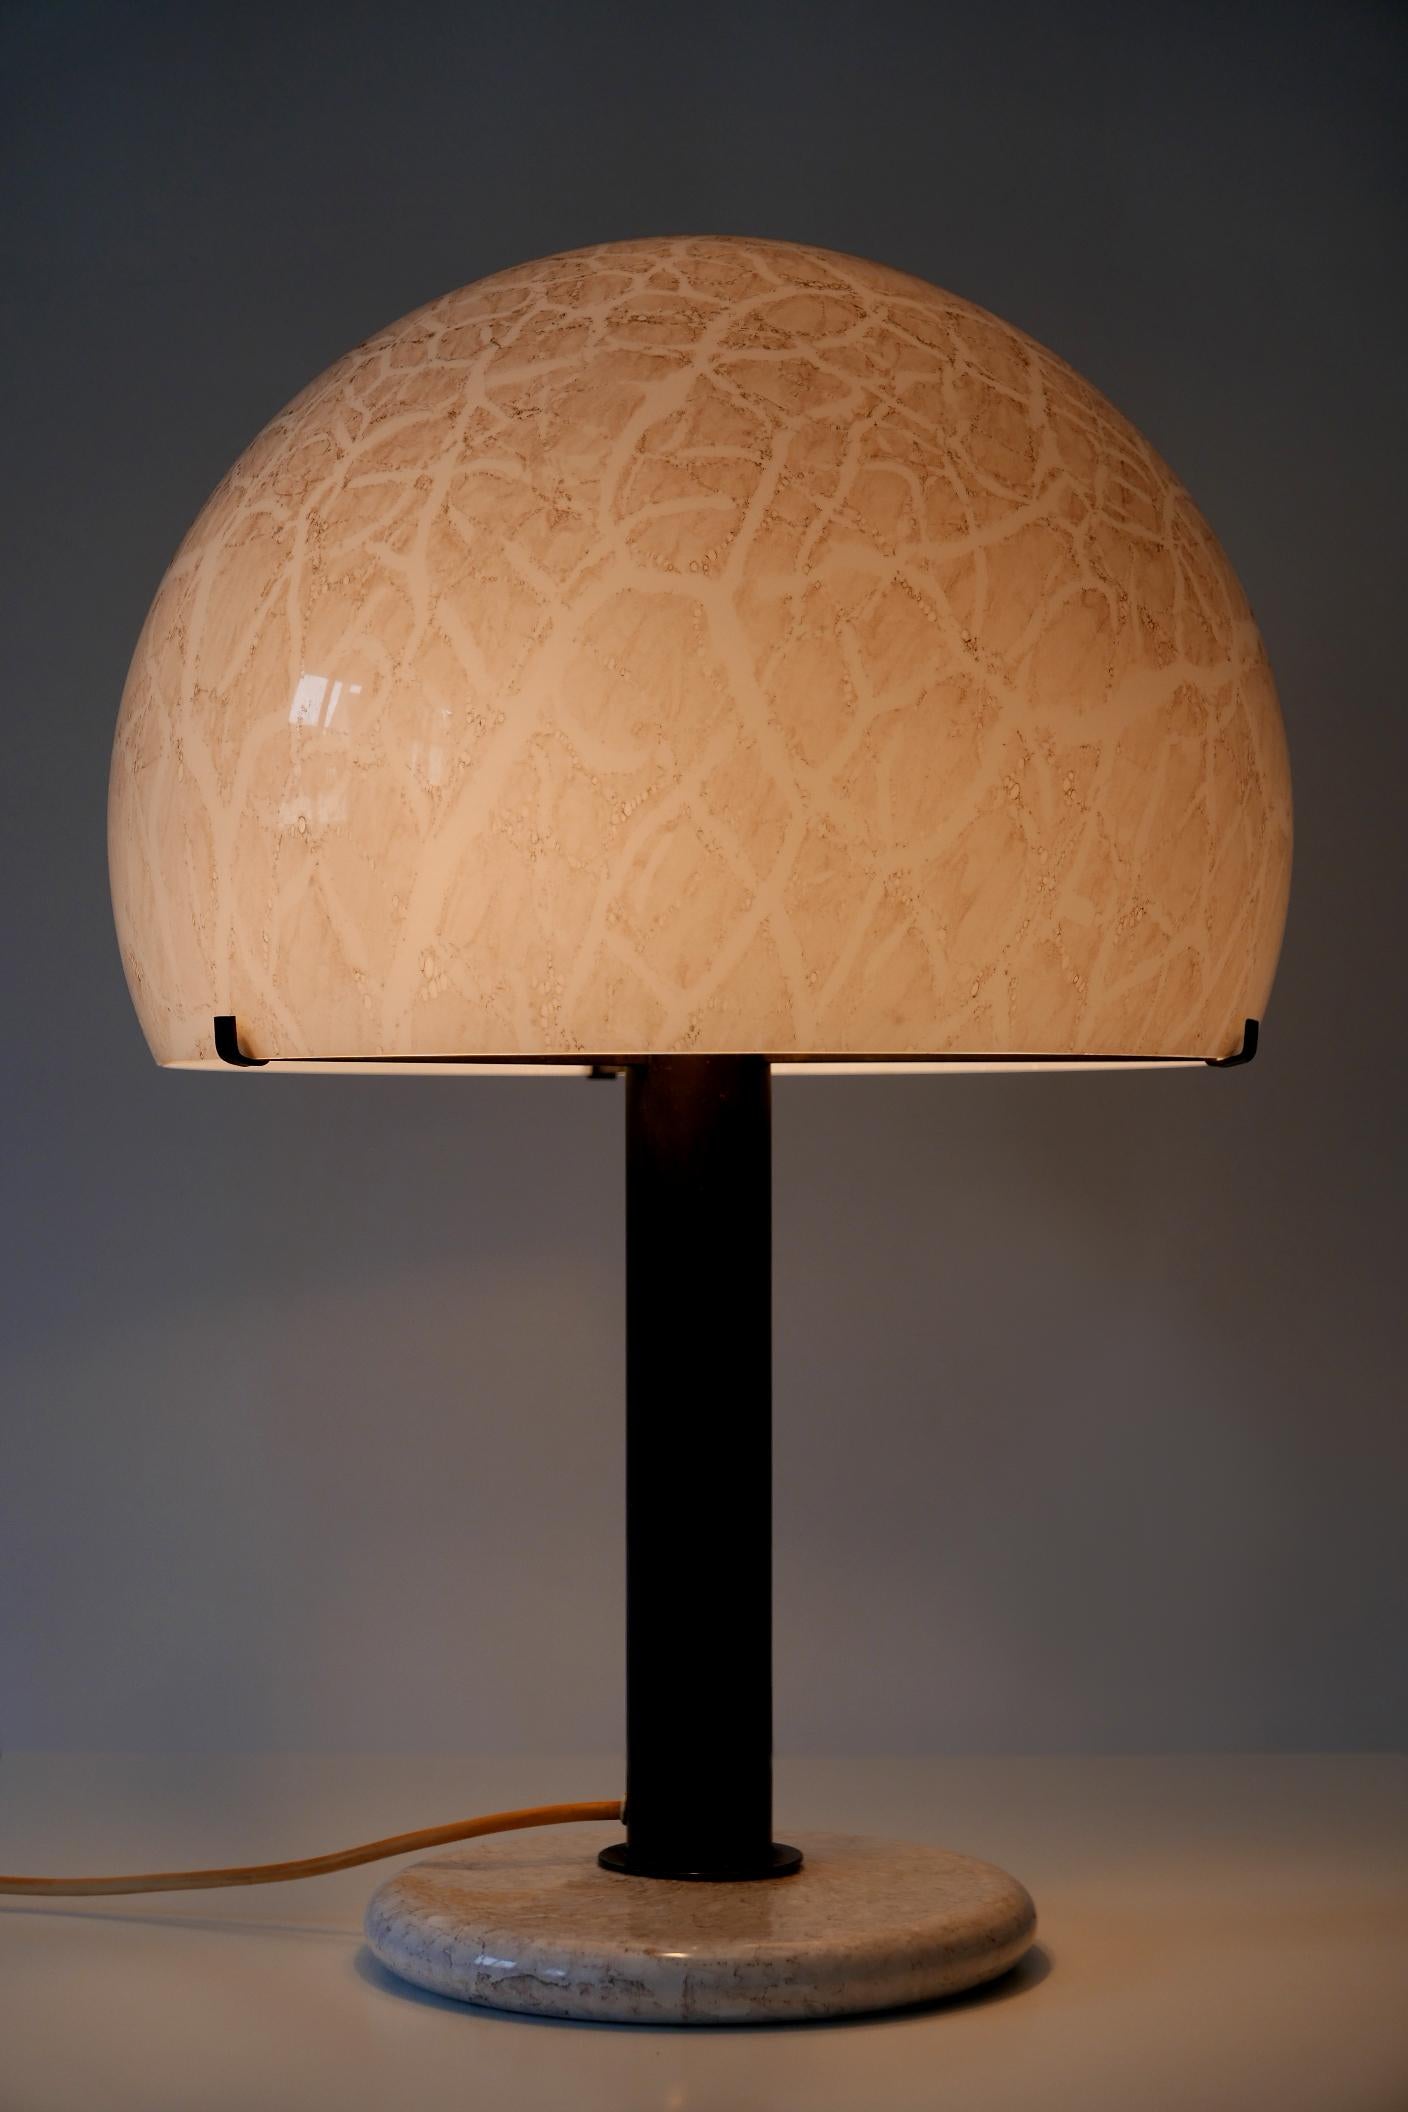 Extrêmement rare, grande et élégante lampe de table en verre de Murano de style moderne du milieu du siècle. Conçu par Ludovico Diaz de Santillana pour Venini, années 1960, Murano, Italie.

Réalisée en verre de Murano, avec un abat-jour et une base